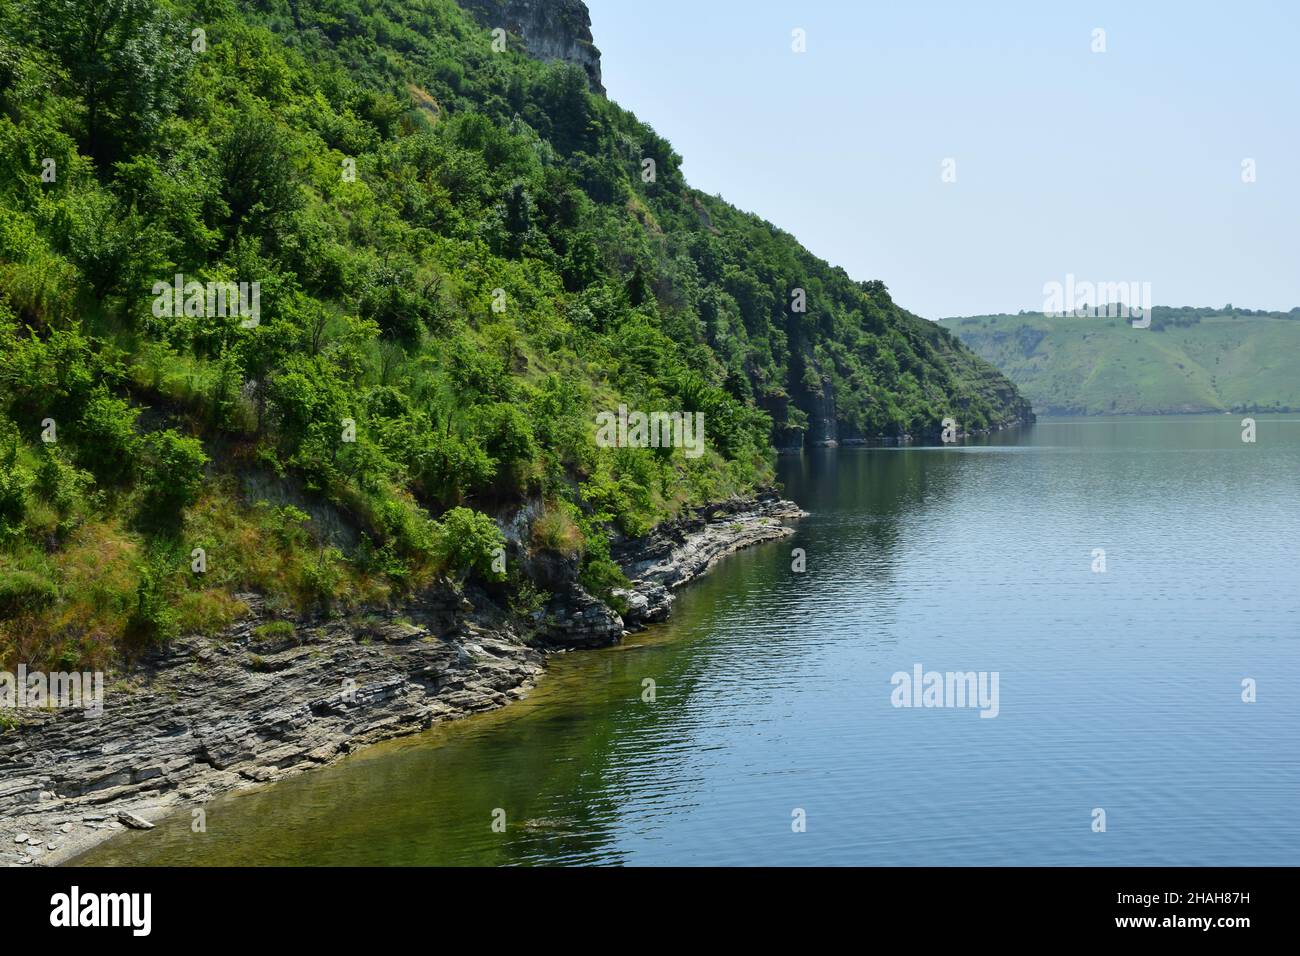 La orilla rocosa del lago está sobrecultivada con árboles verdes y arbustos al pie de la montaña Foto de stock